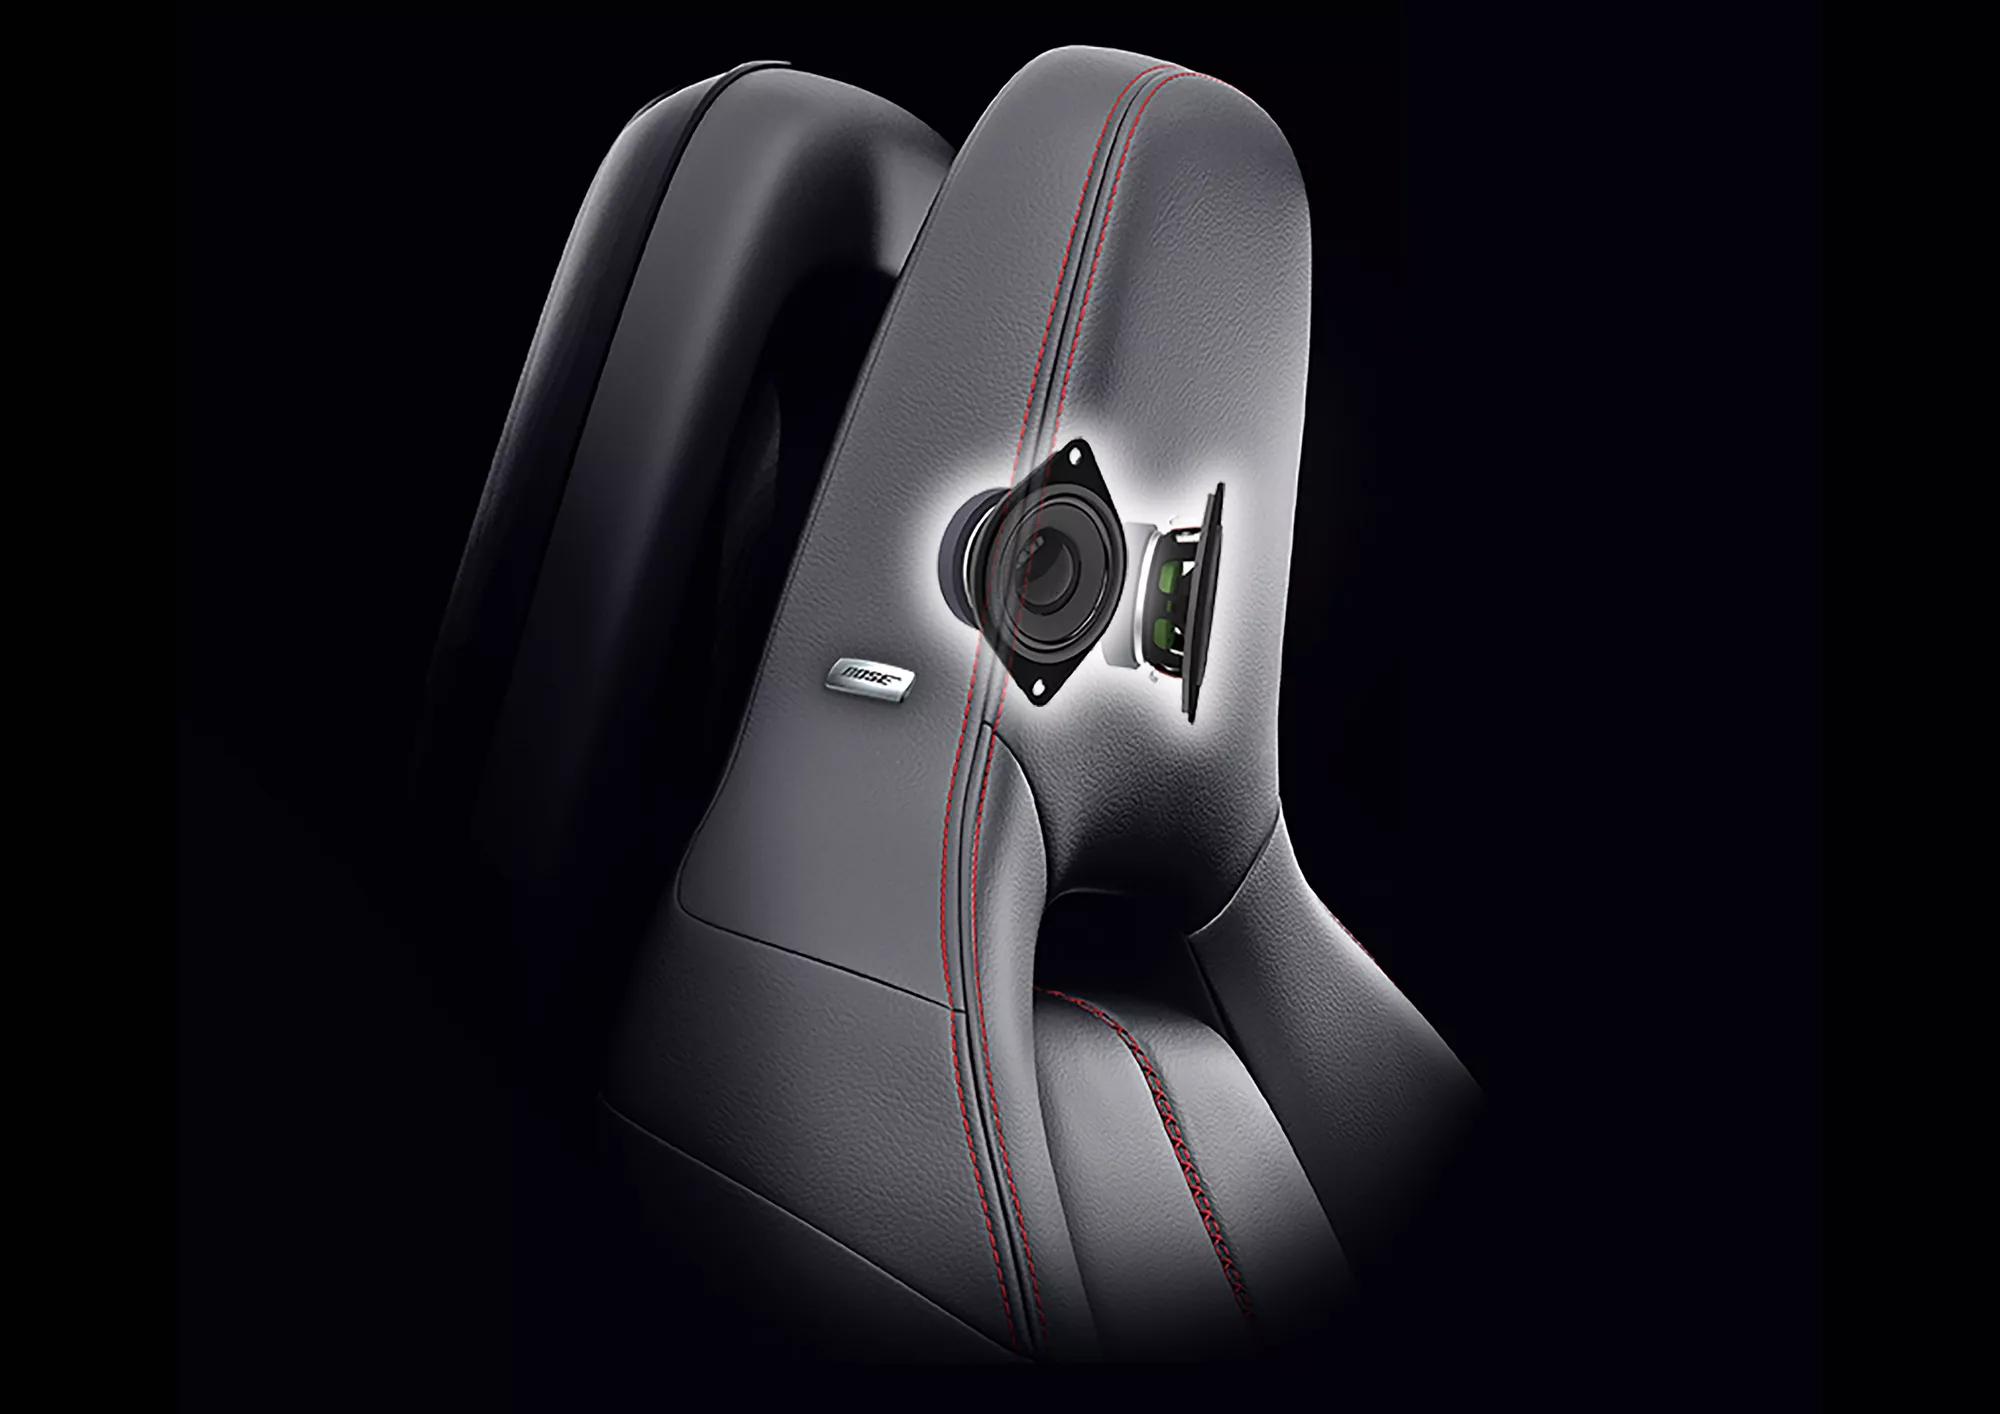 Bose UltraNearfield headrest speakers